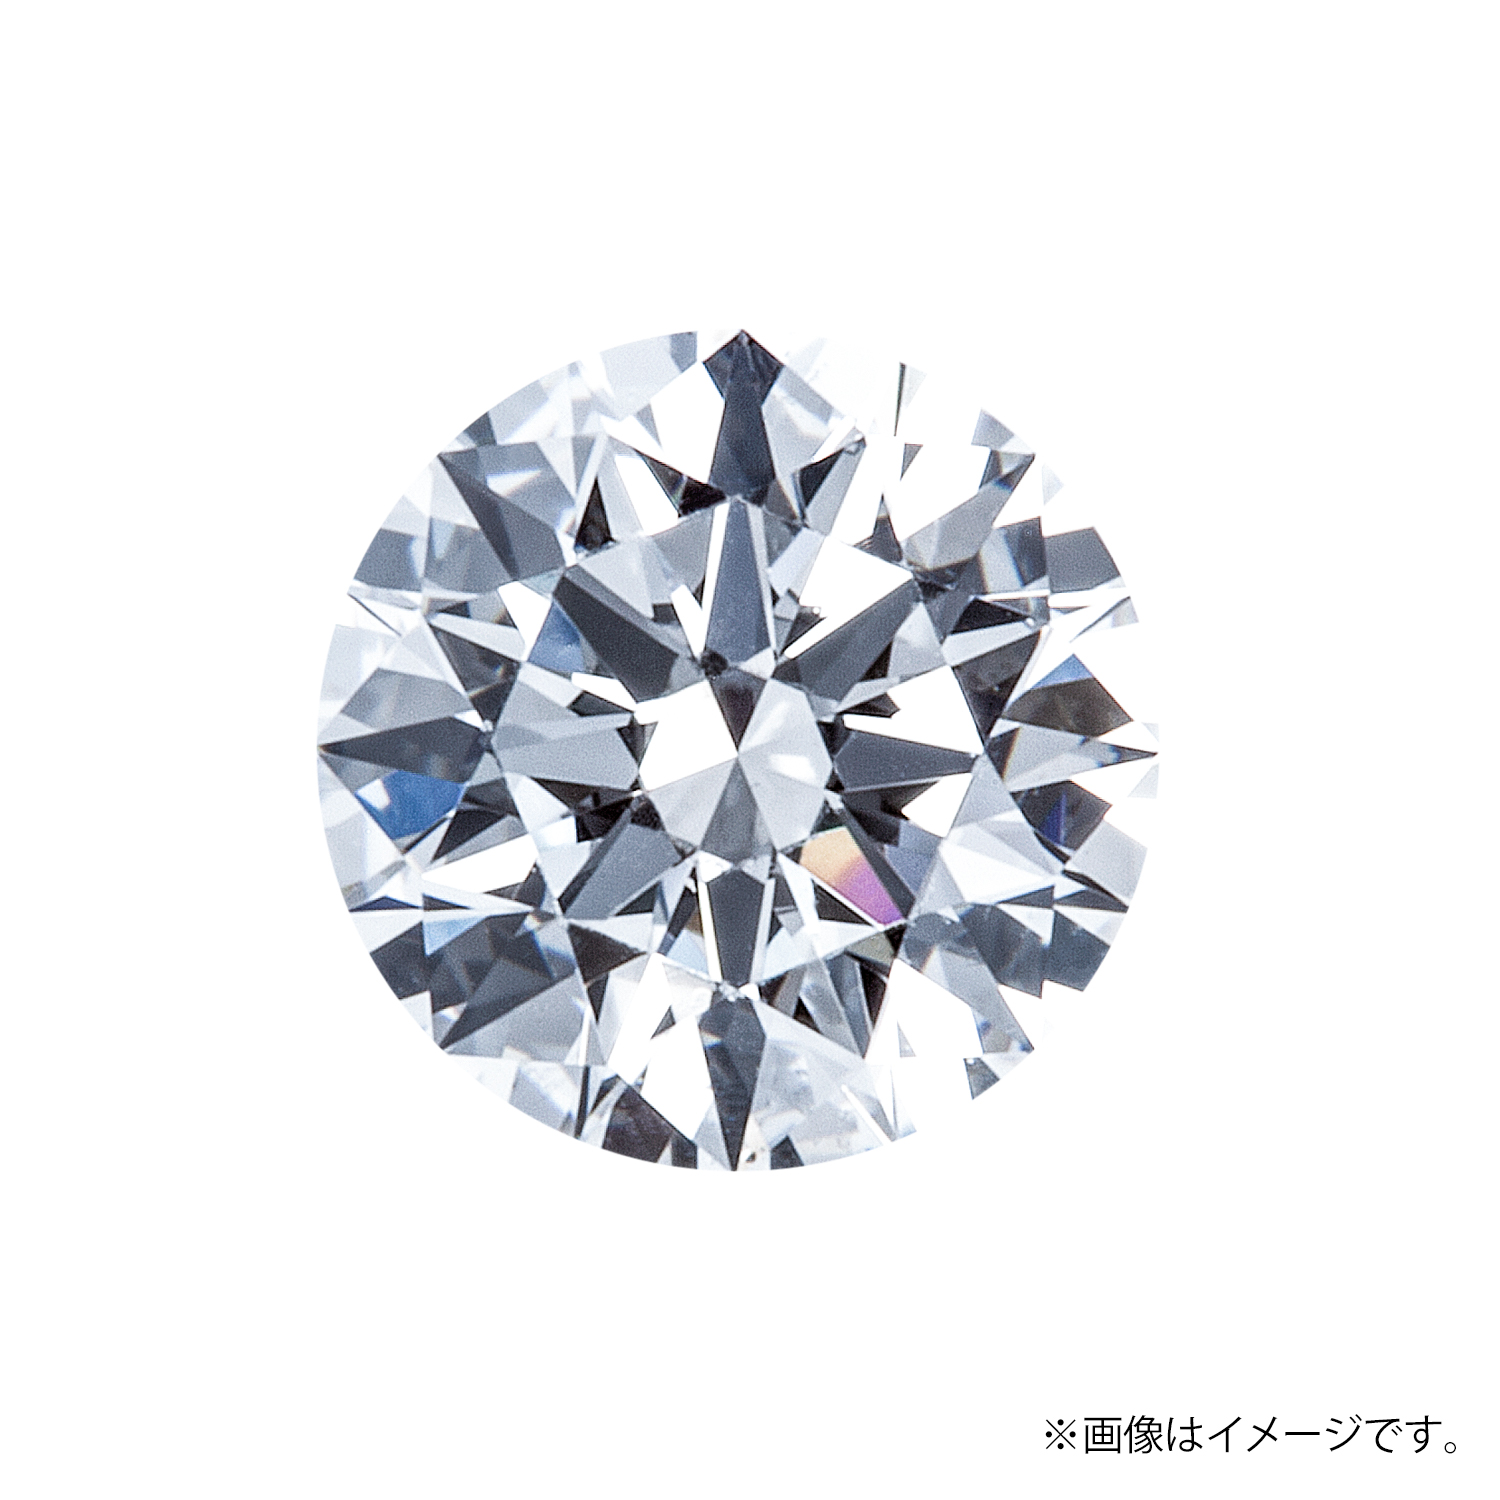 0.260ct Round ダイヤモンド / D / SI1 / 3EX-H&C